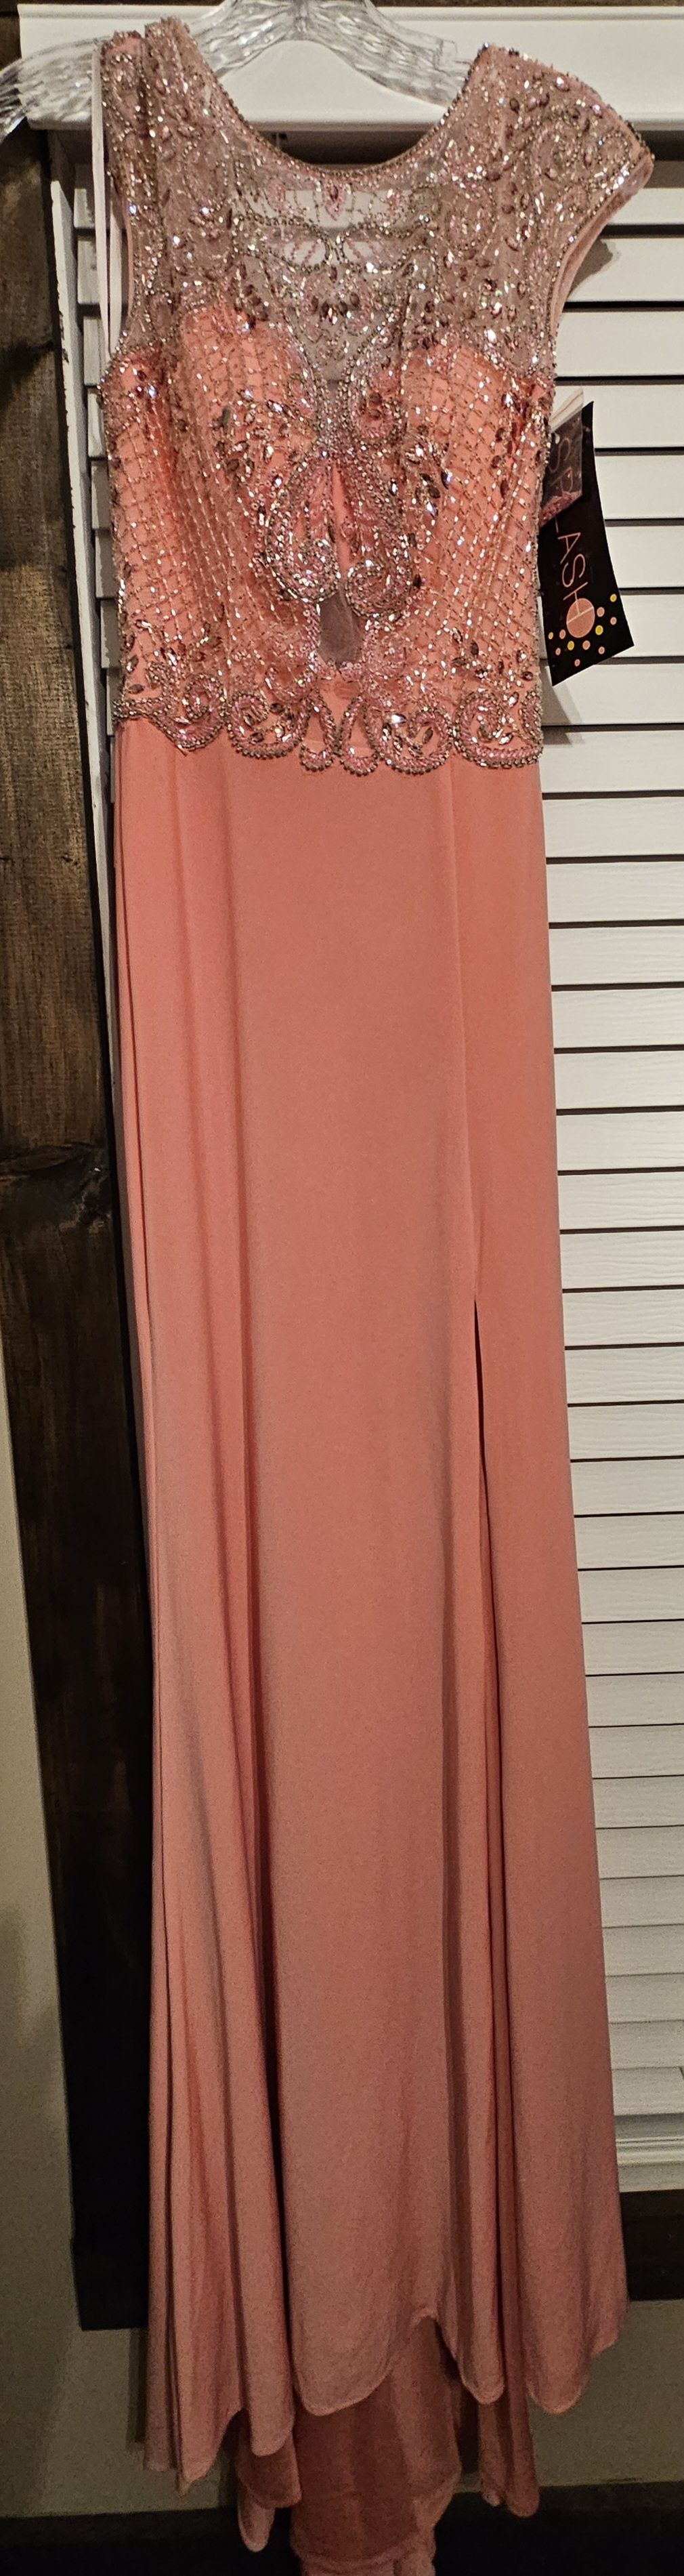 Splash Size 6 Prom Pink Side Slit Dress on Queenly